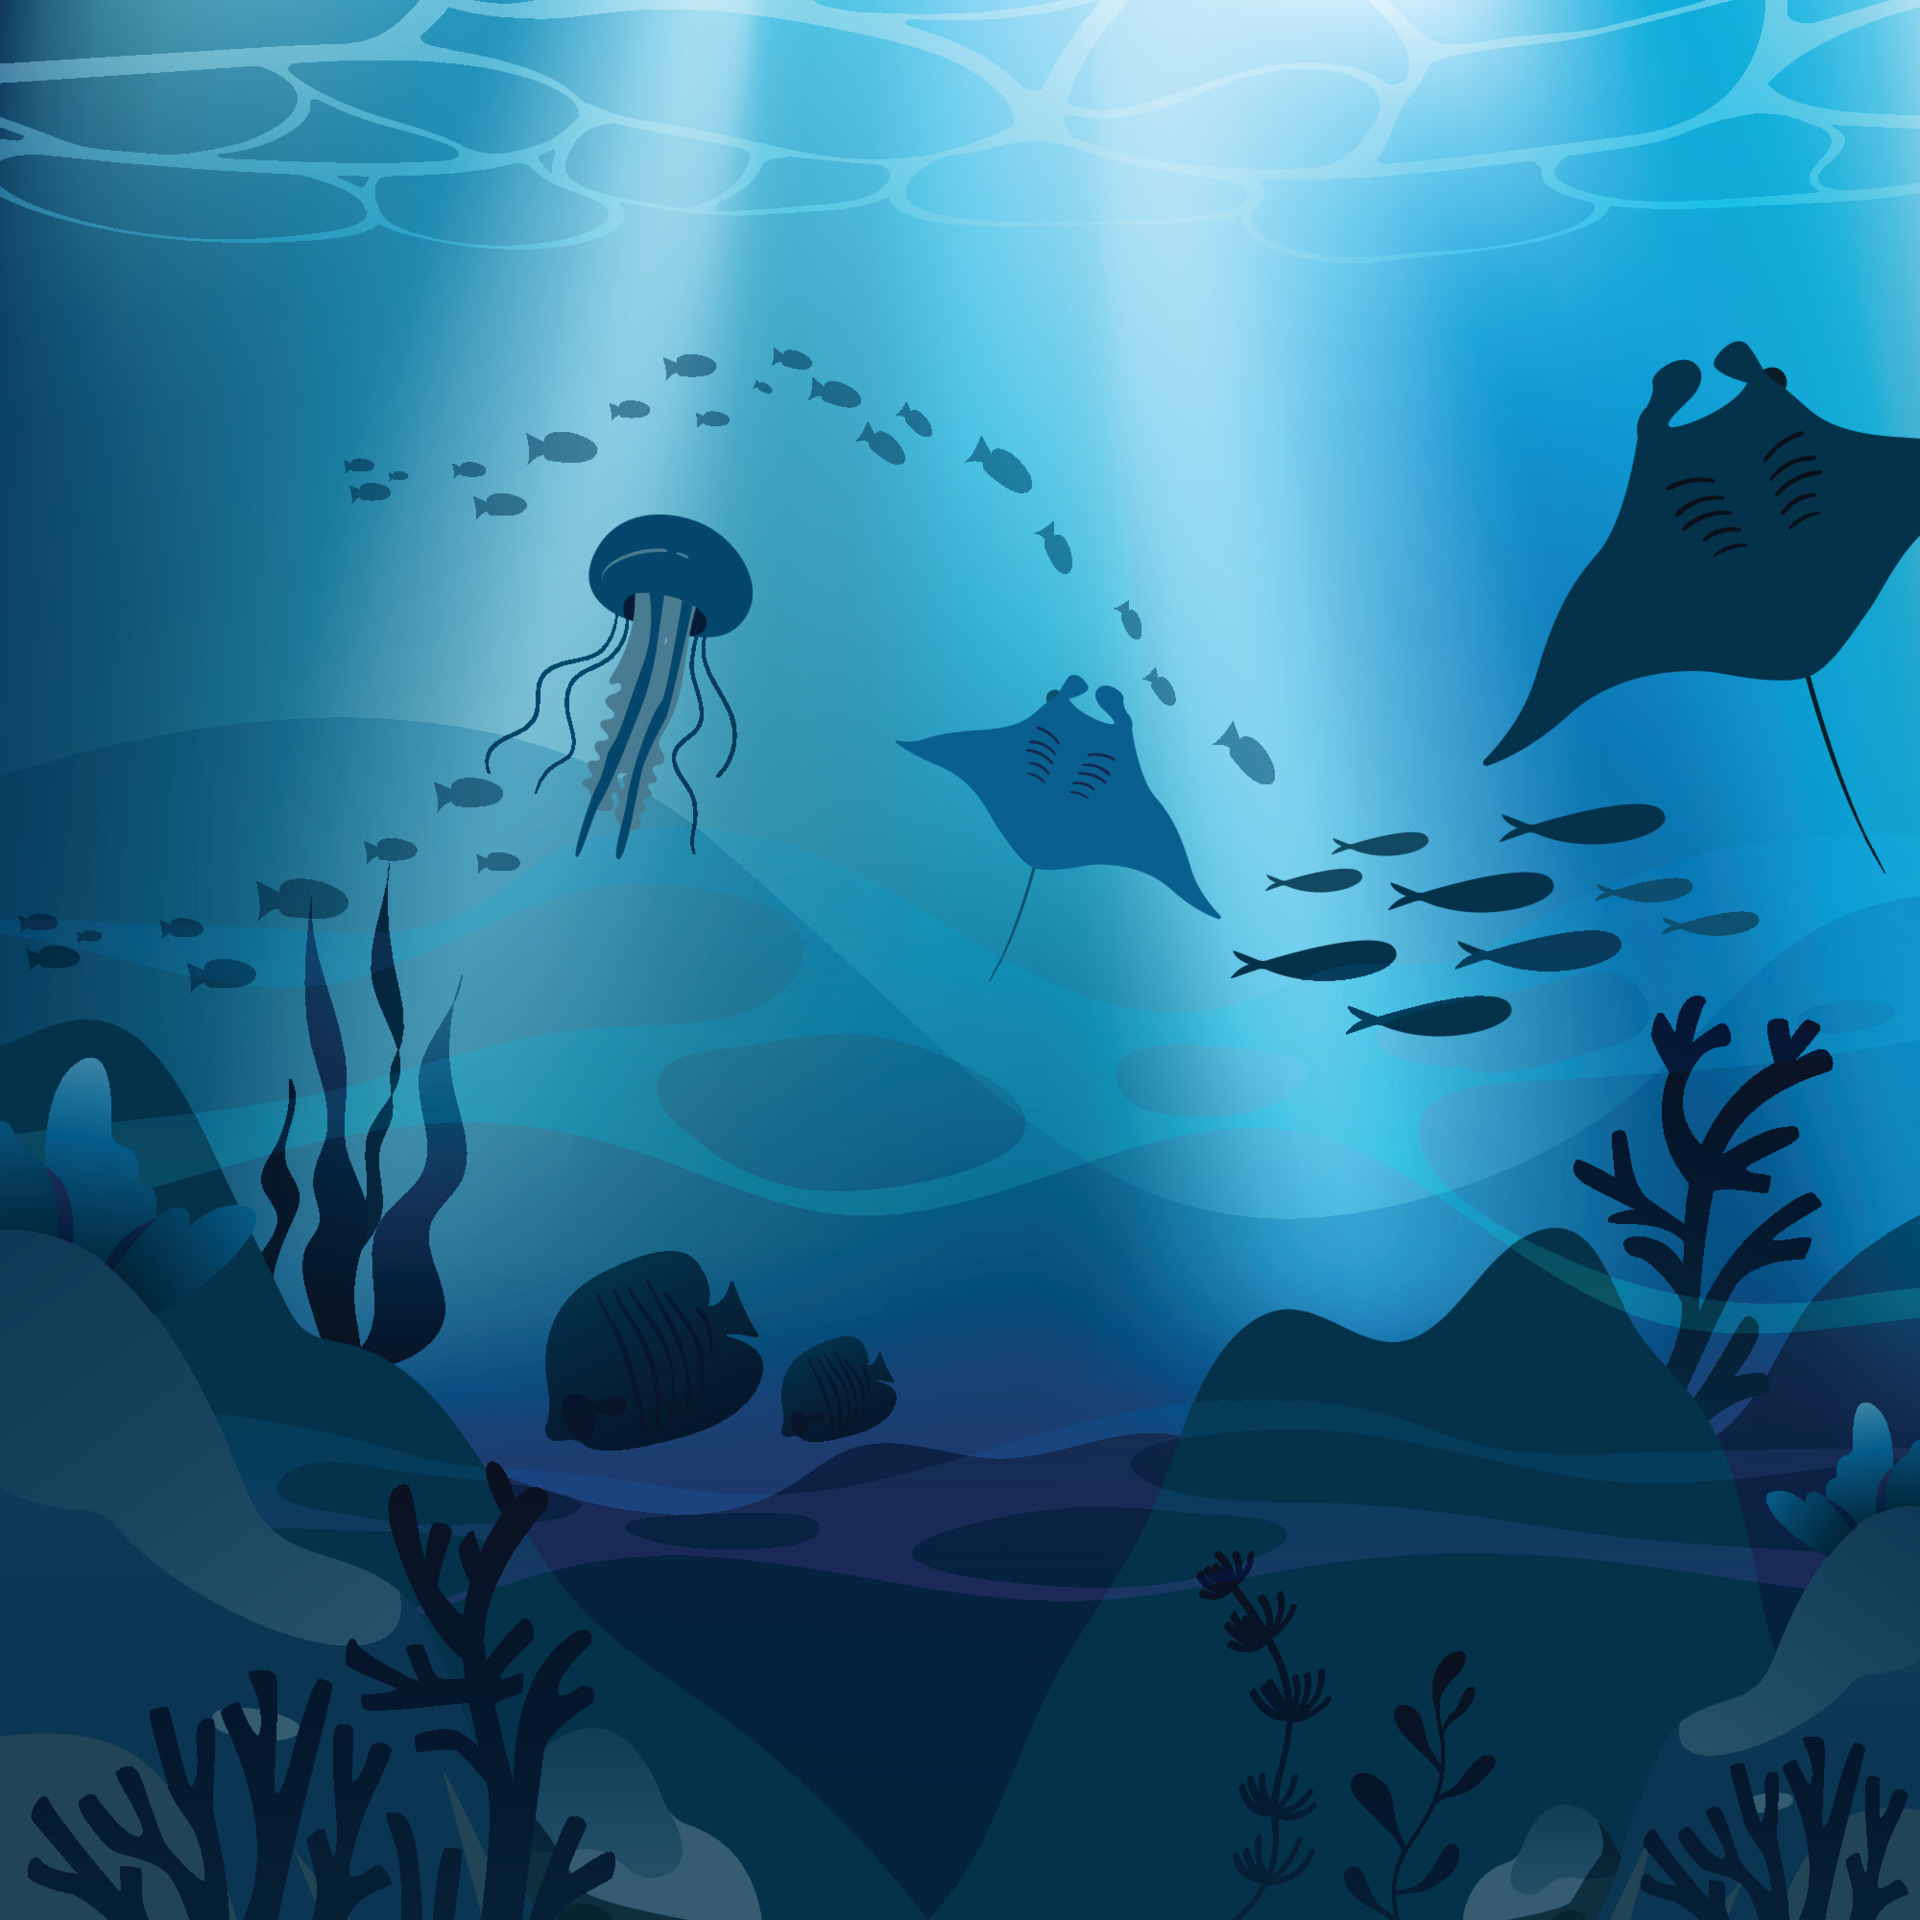 Hình nền đại dương sâu xanh đem lại cho bạn cảm giác tinh thần sâu sắc. Từ những tia sáng xuyên qua đáy đại dương và những đại dương sâu thẳm thân thuộc nơi sinh sống của các loài sinh vật khác nhau, đây là lựa chọn tuyệt với cho những người yêu thích tự nhiên và môi trường.